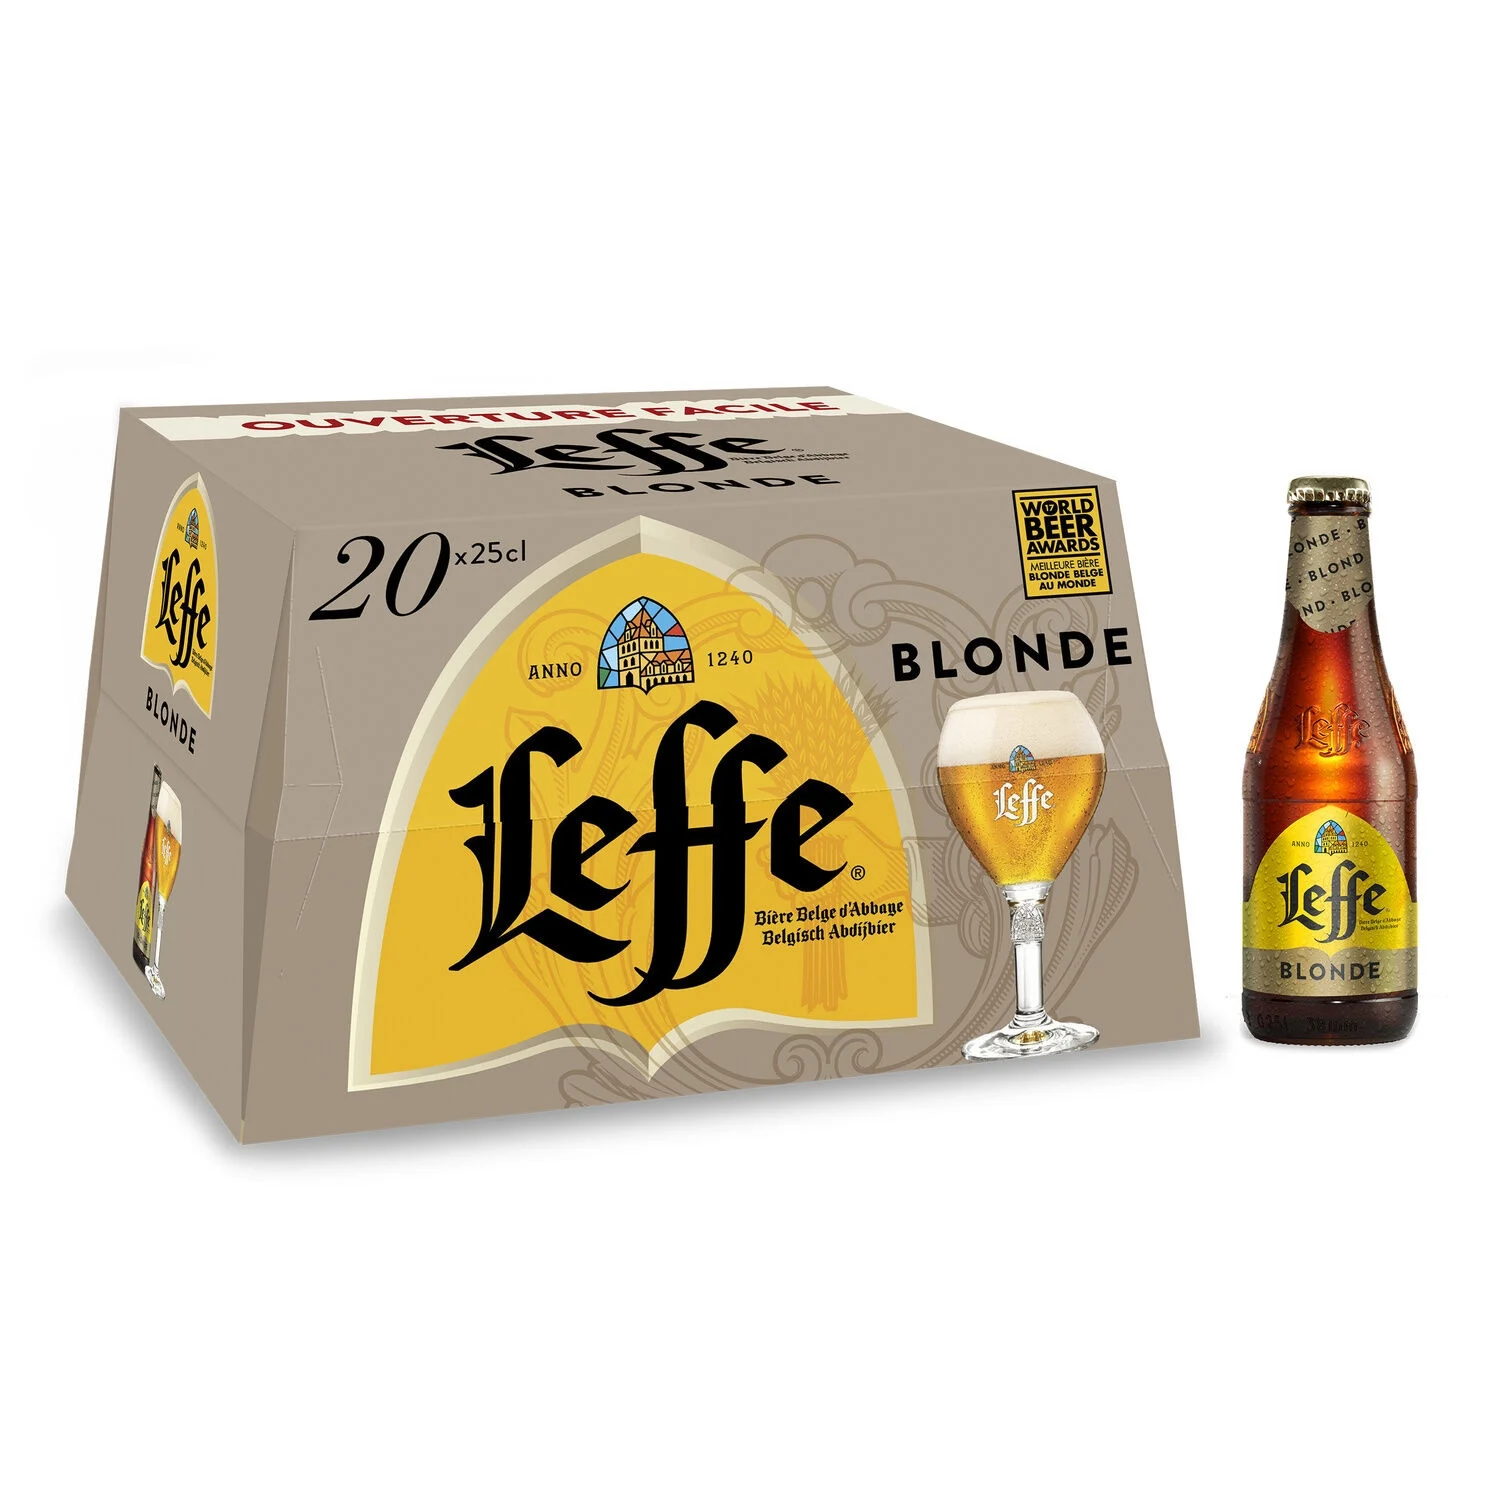 Bière Blonde, 6,6°, 20x25cl - LEFFE